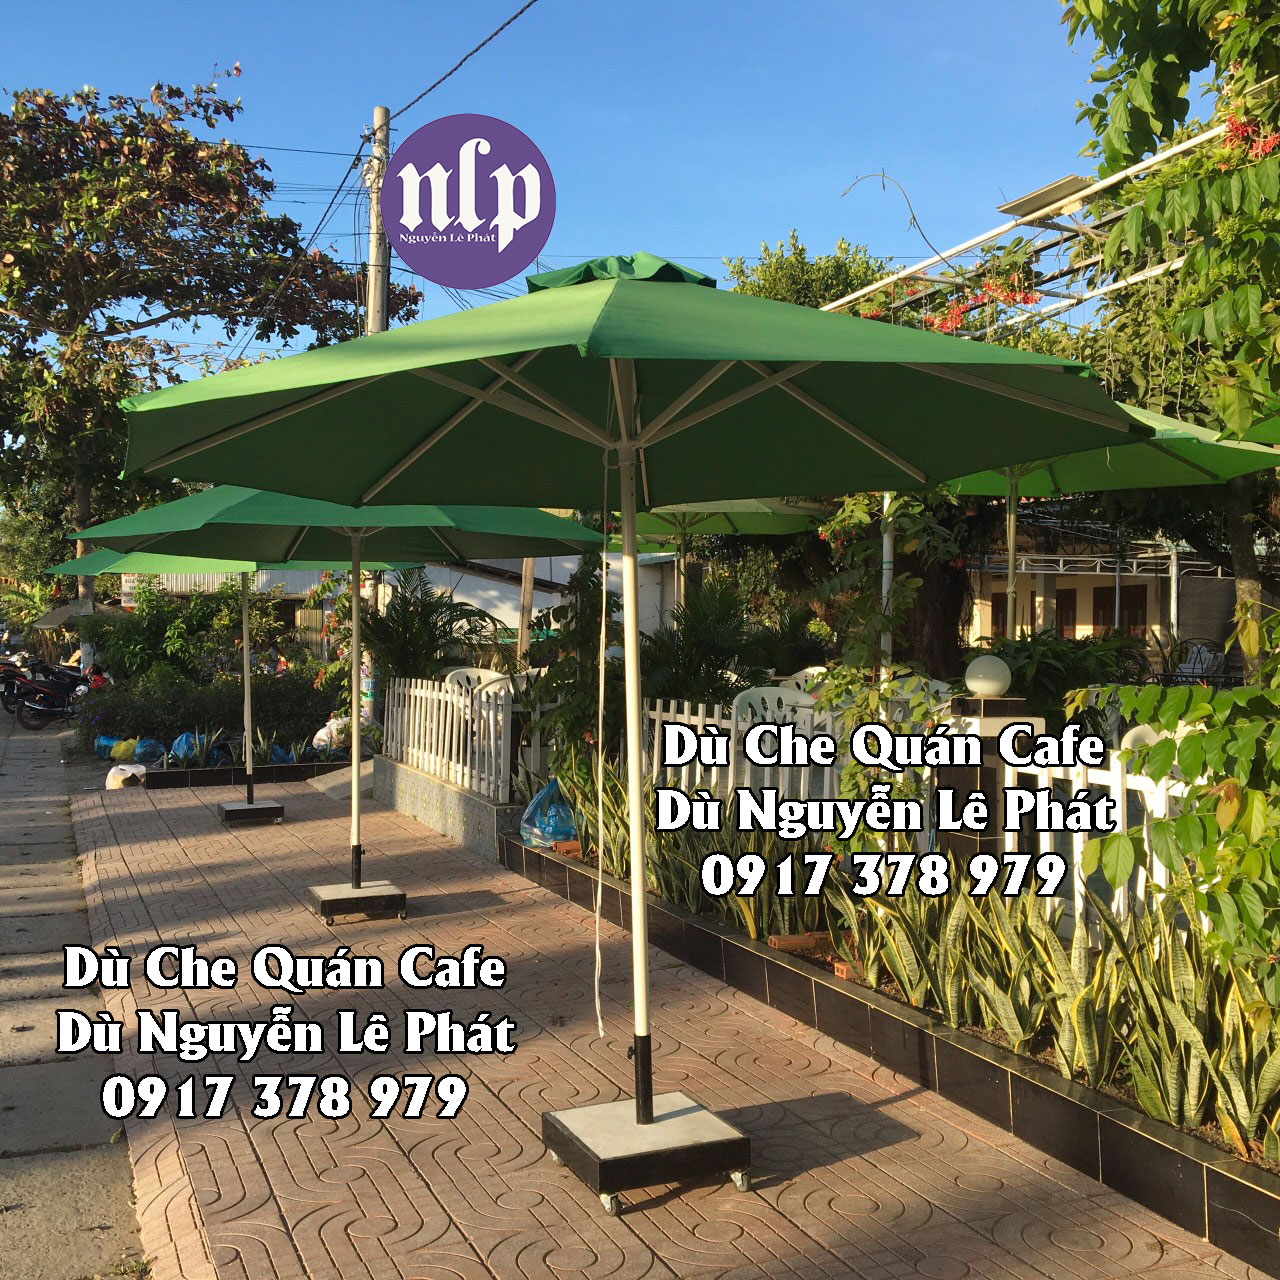 Dù Che Nắng Quán Cafe Tây Ninh